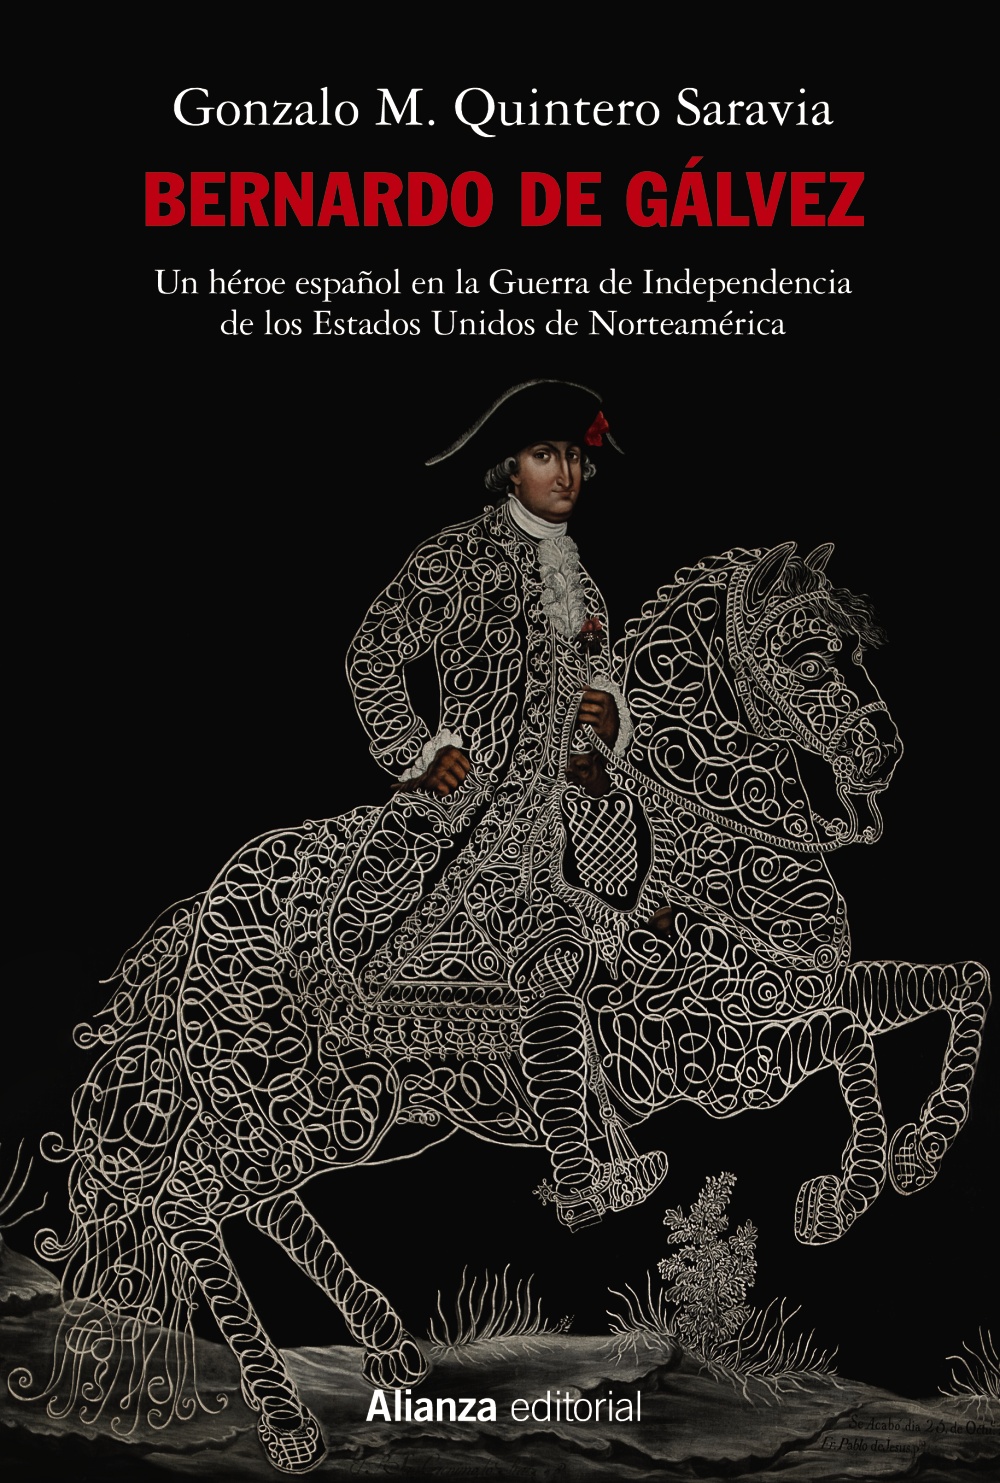 Bernardo de Gálvez "Un héroe español en la Guerra de la Independencia de los Estados Unidos de Norteamérica"